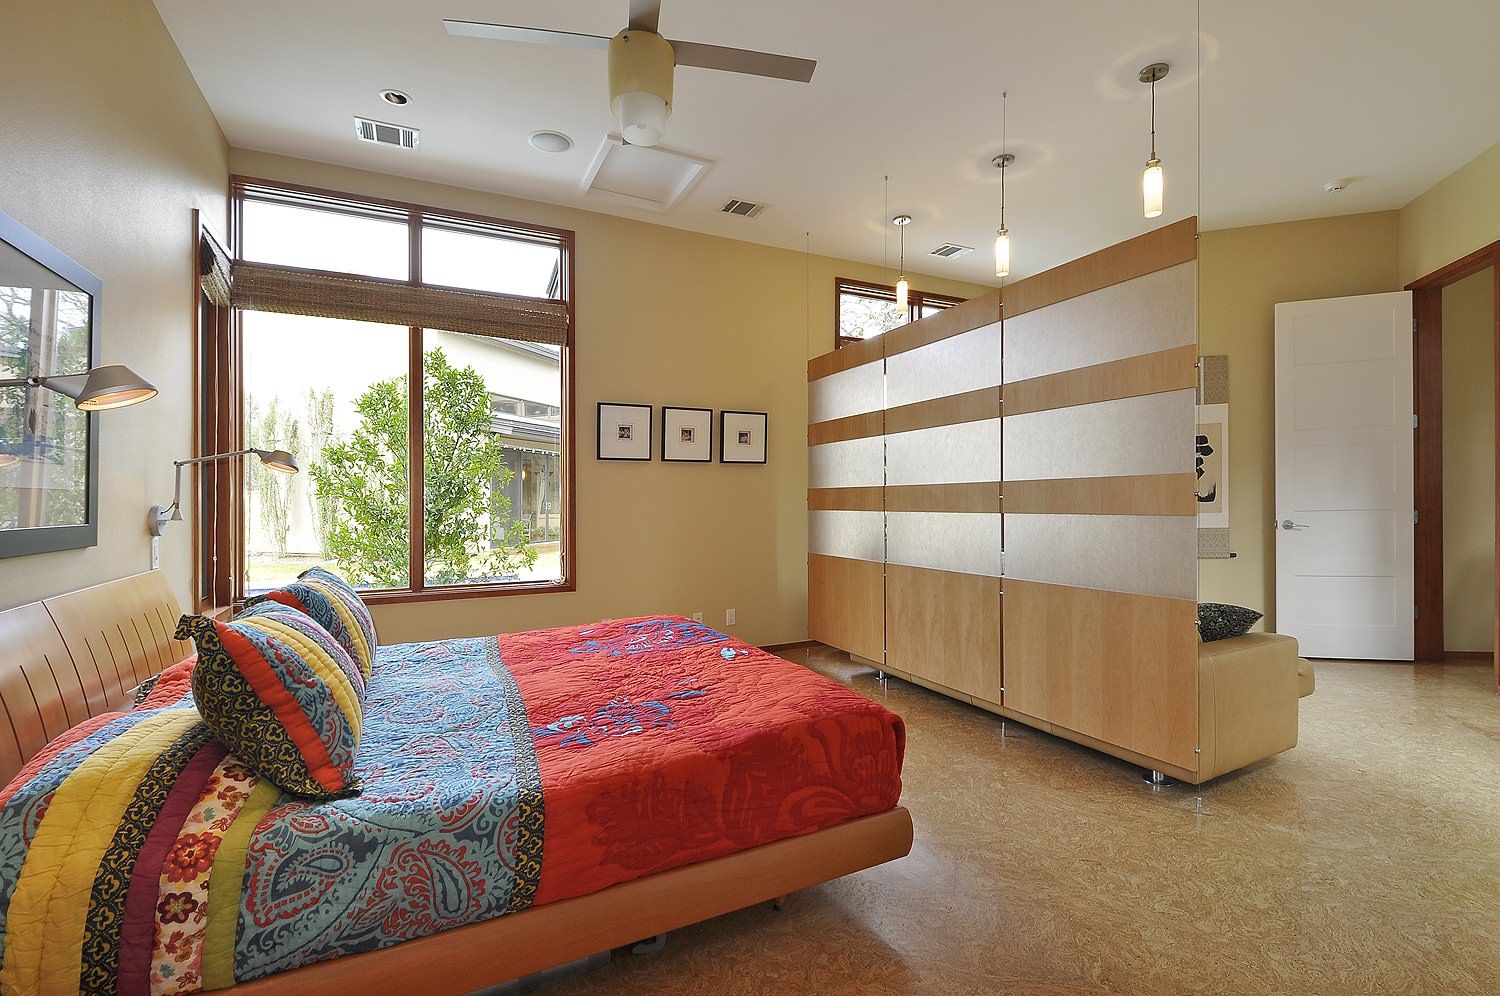 Thiết kế vách ngăn phòng ngủ: Thiết kế vách ngăn phòng ngủ đem lại nhiều lợi ích về không gian sống cho gia đình. Với nhiều kiểu dáng, màu sắc và chức năng khác nhau, vách ngăn phòng ngủ giúp tạo ra không gian phân chia đa năng, tối ưu hóa diện tích và thuận tiện cho việc sử dụng.